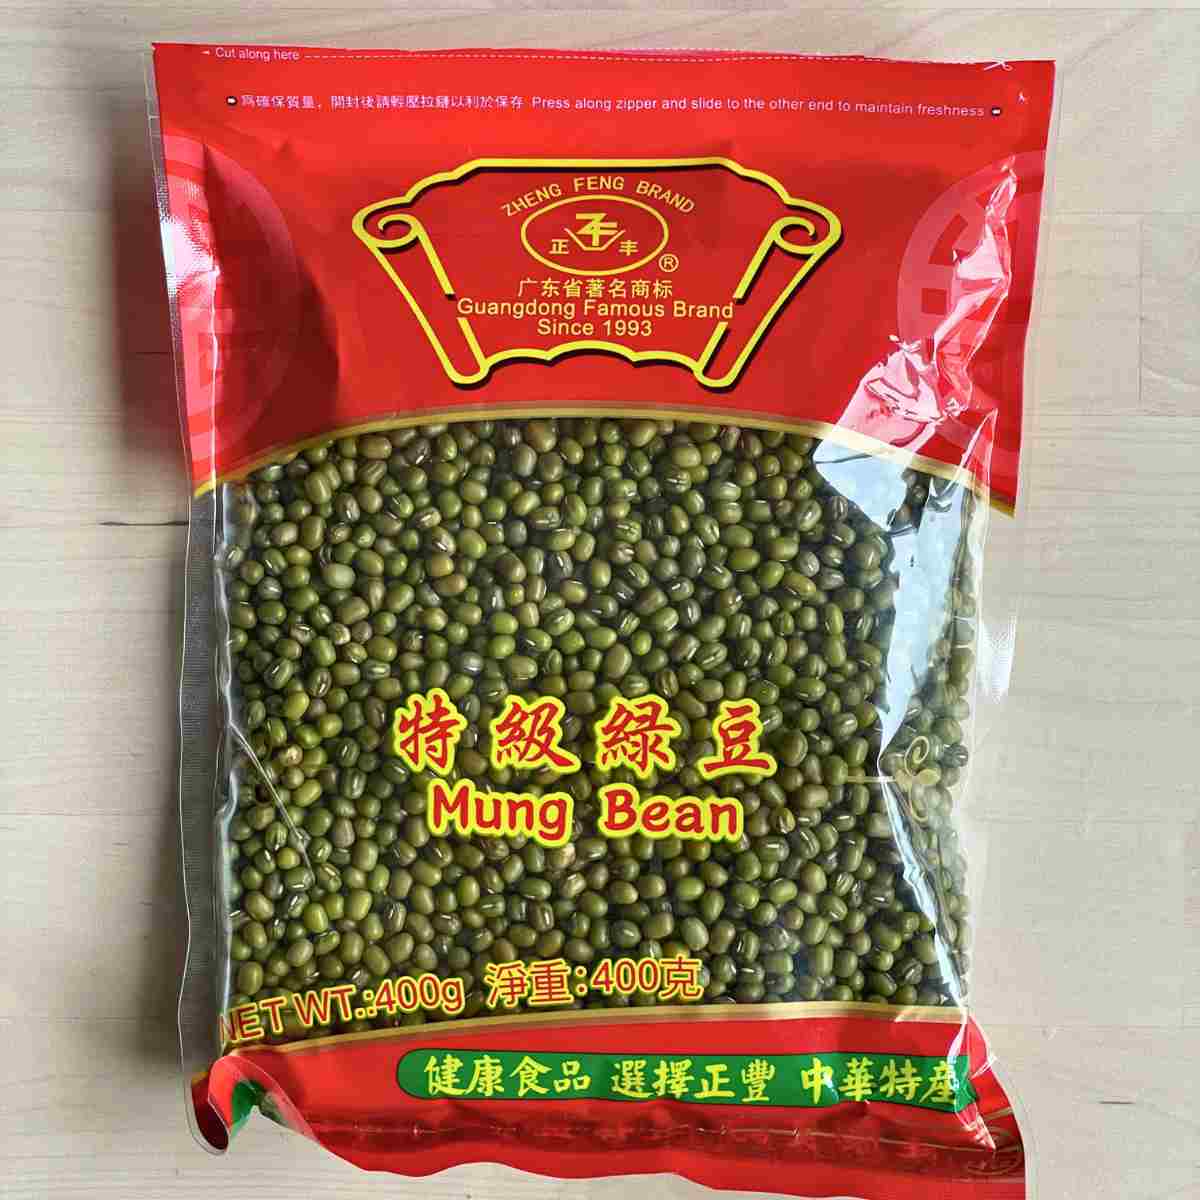 dried mung bean packet